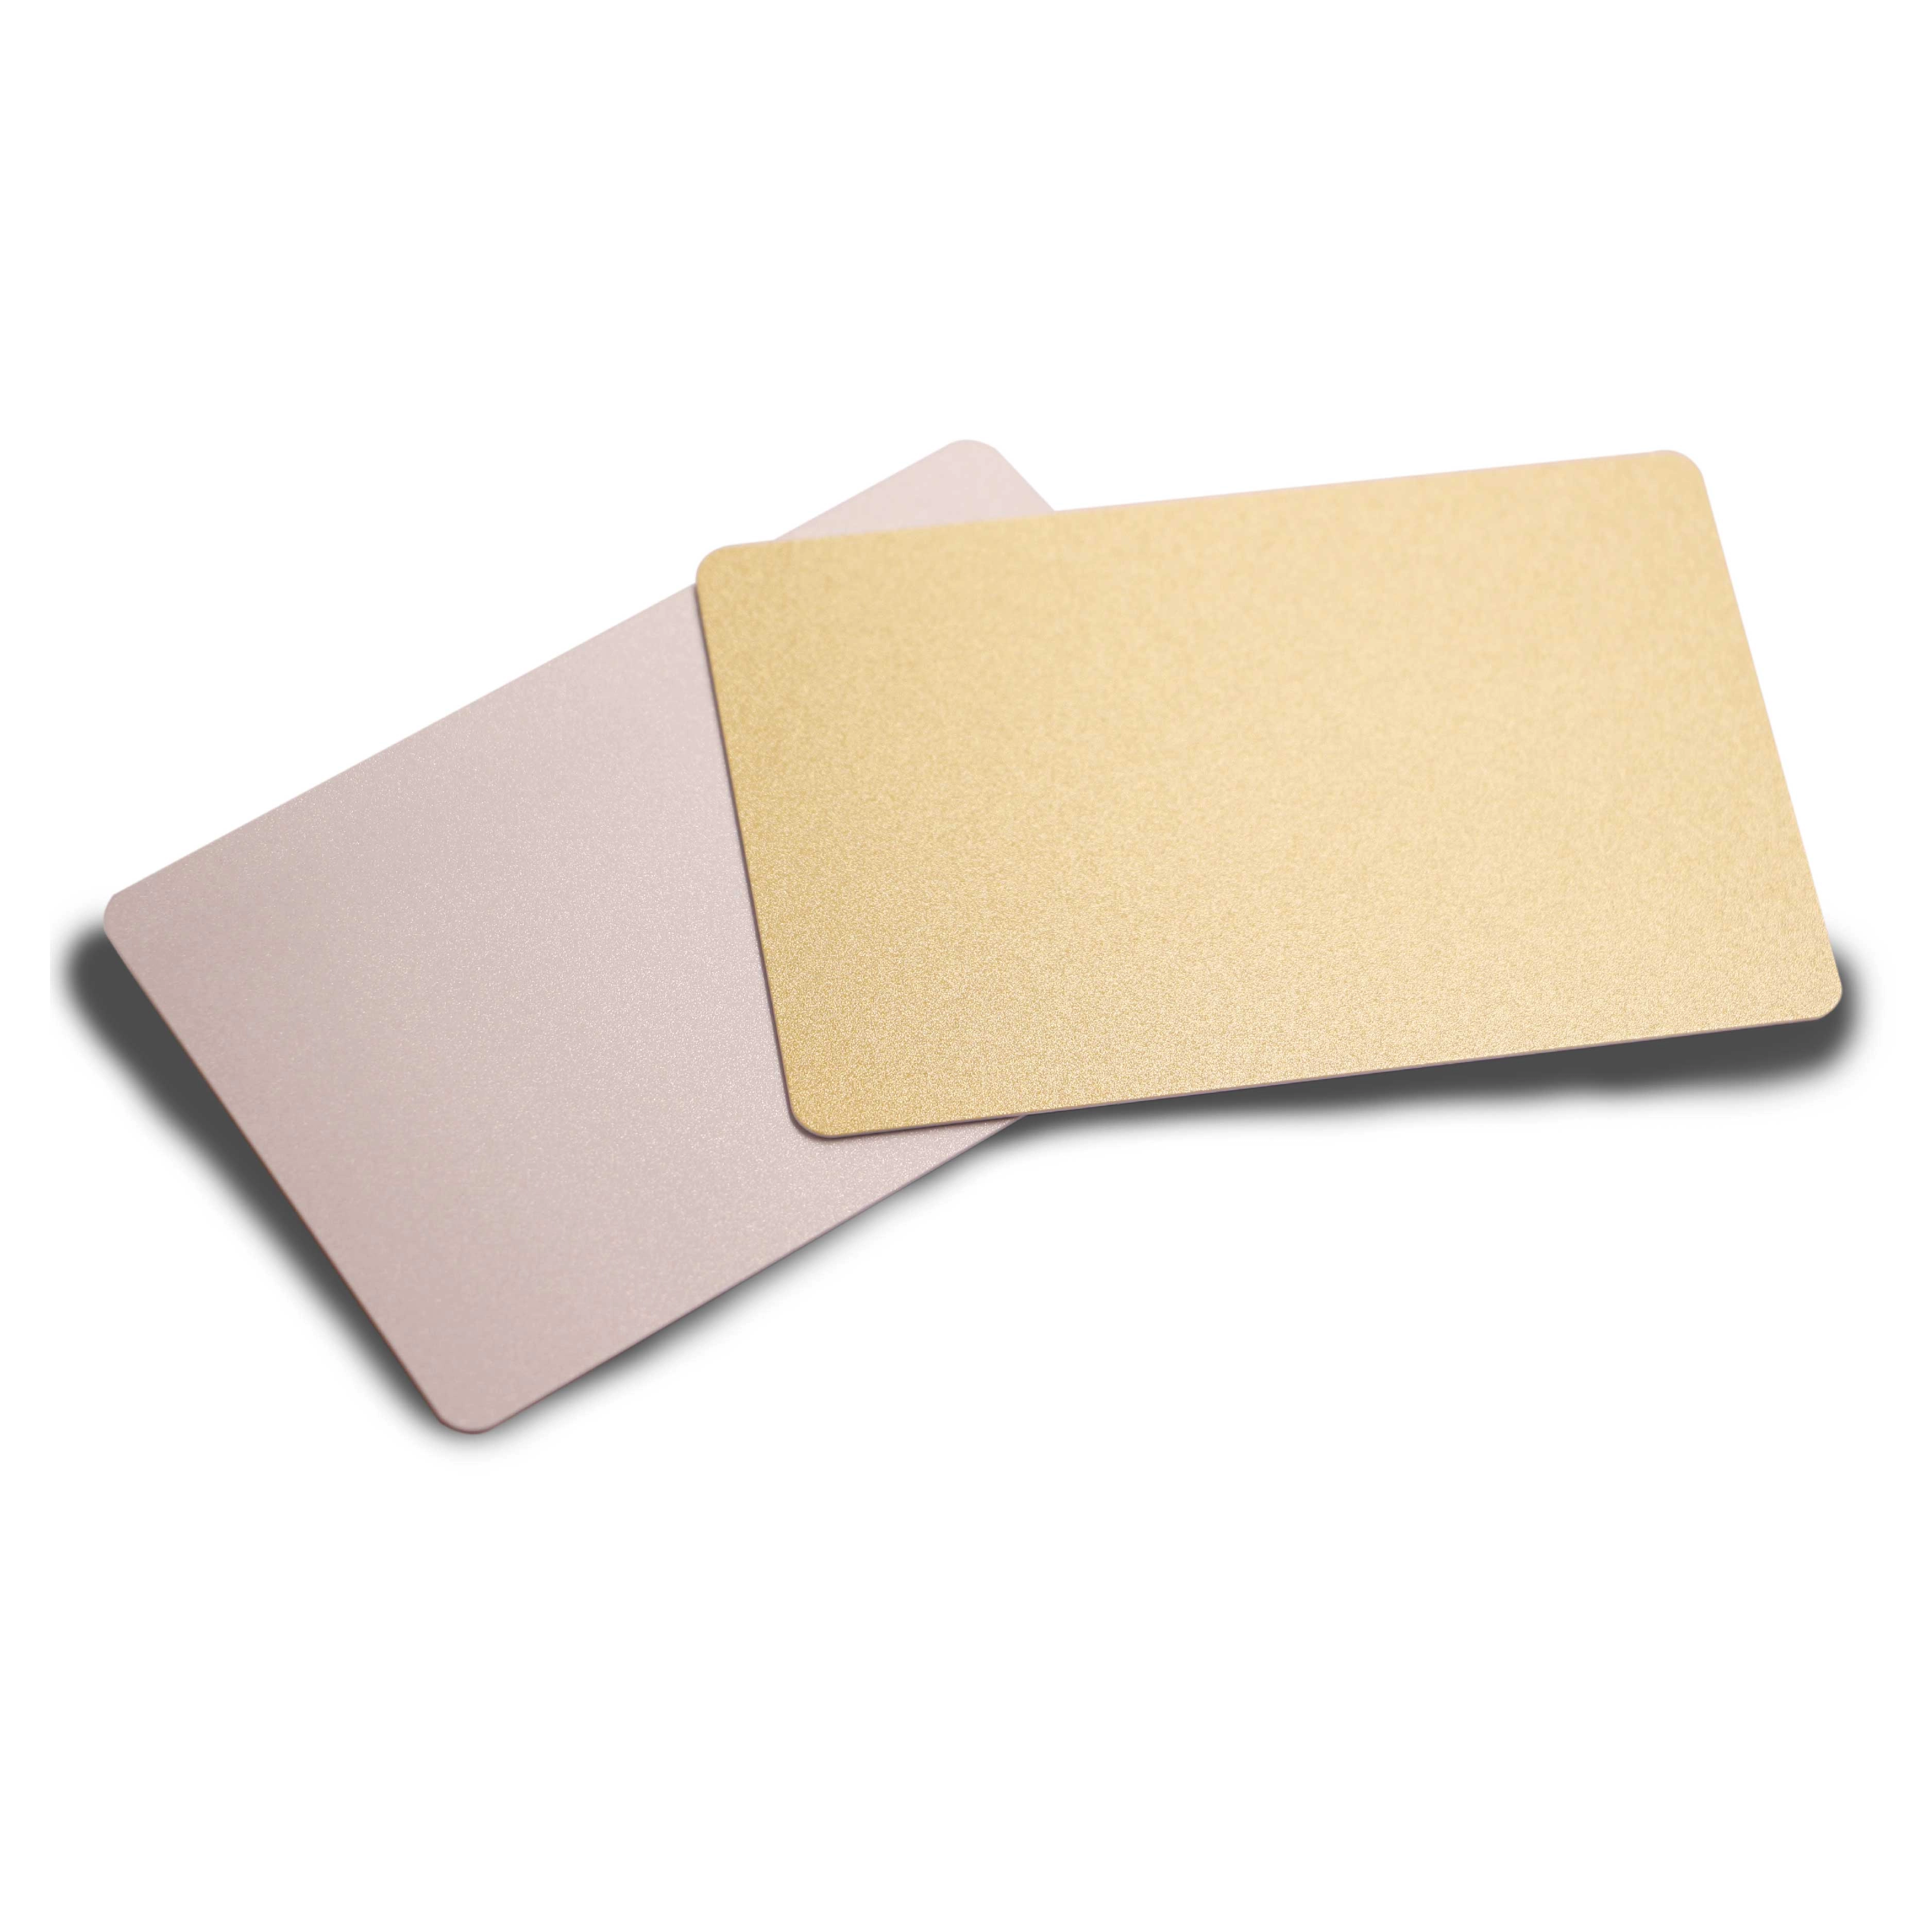 Gold Flushed Colors Κενές κάρτες για εκτύπωση